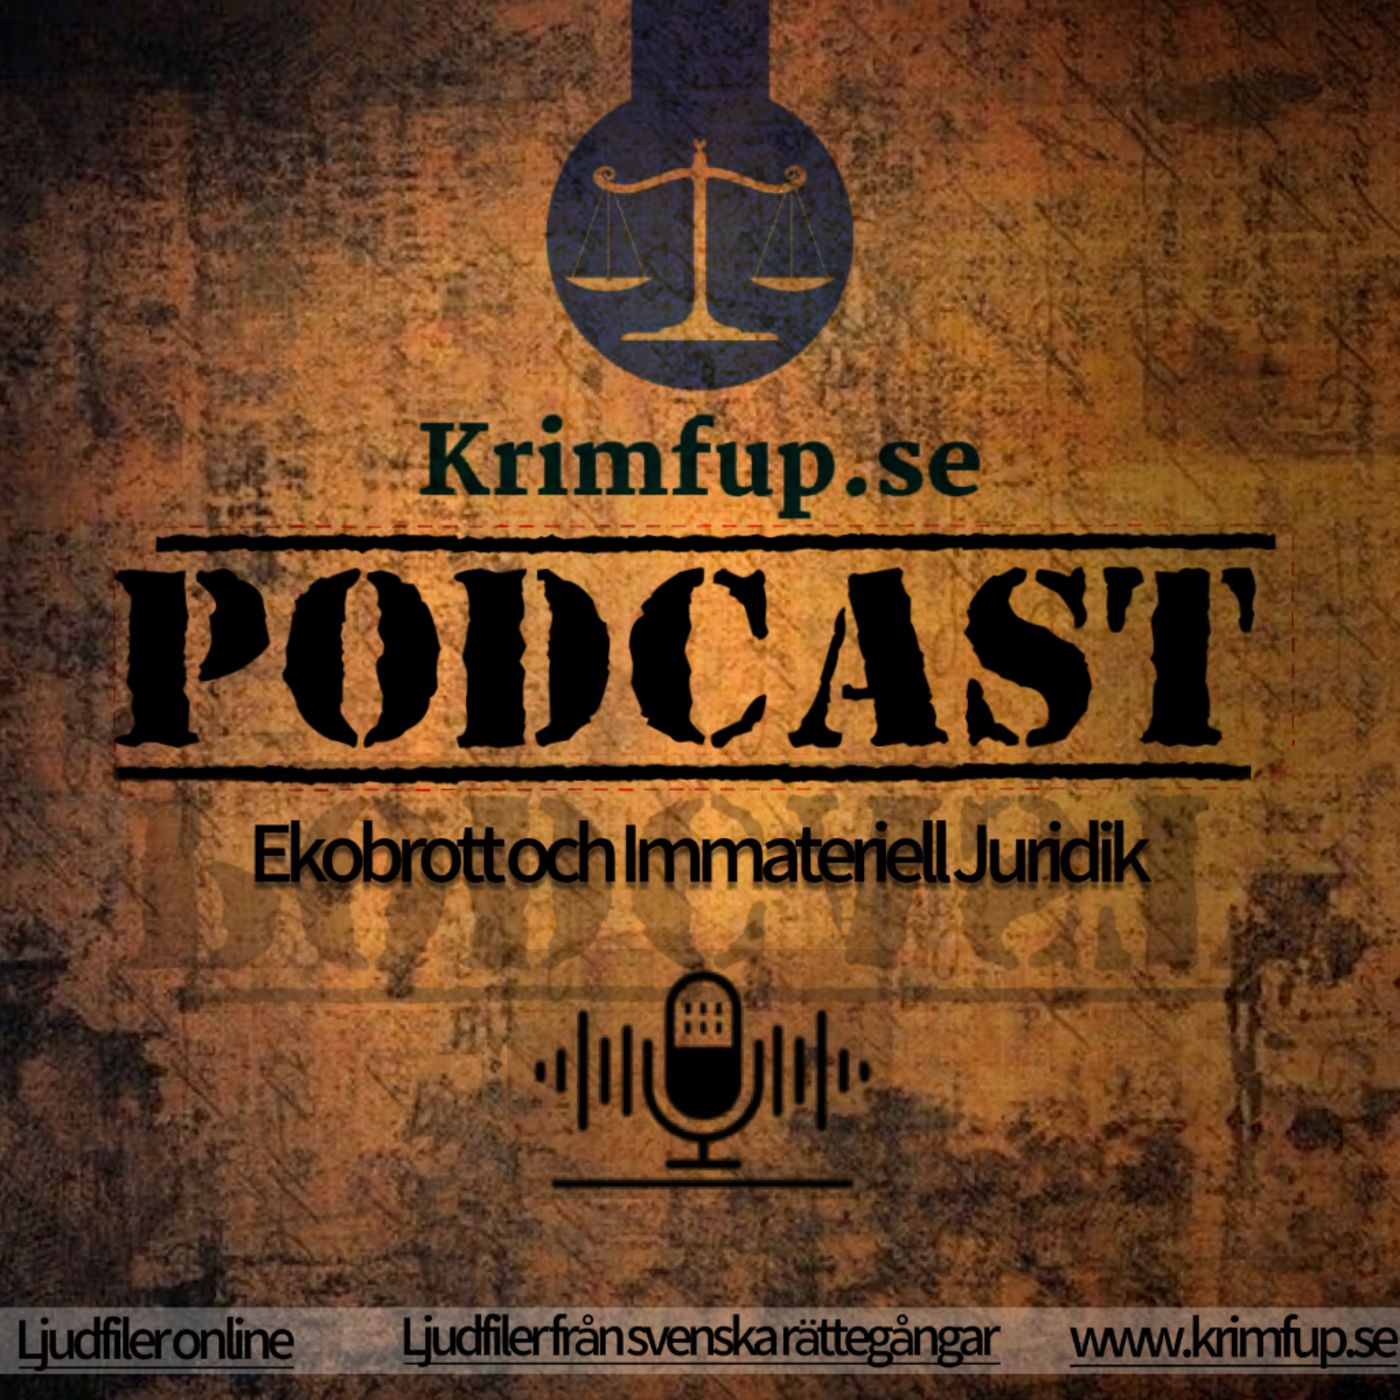 (PODDTIPS!!!) Missa inte vår andra podcast med rättsfall om ekobrott! -＞ EKOBROTT OCH IMMATERIELL JURIDIK